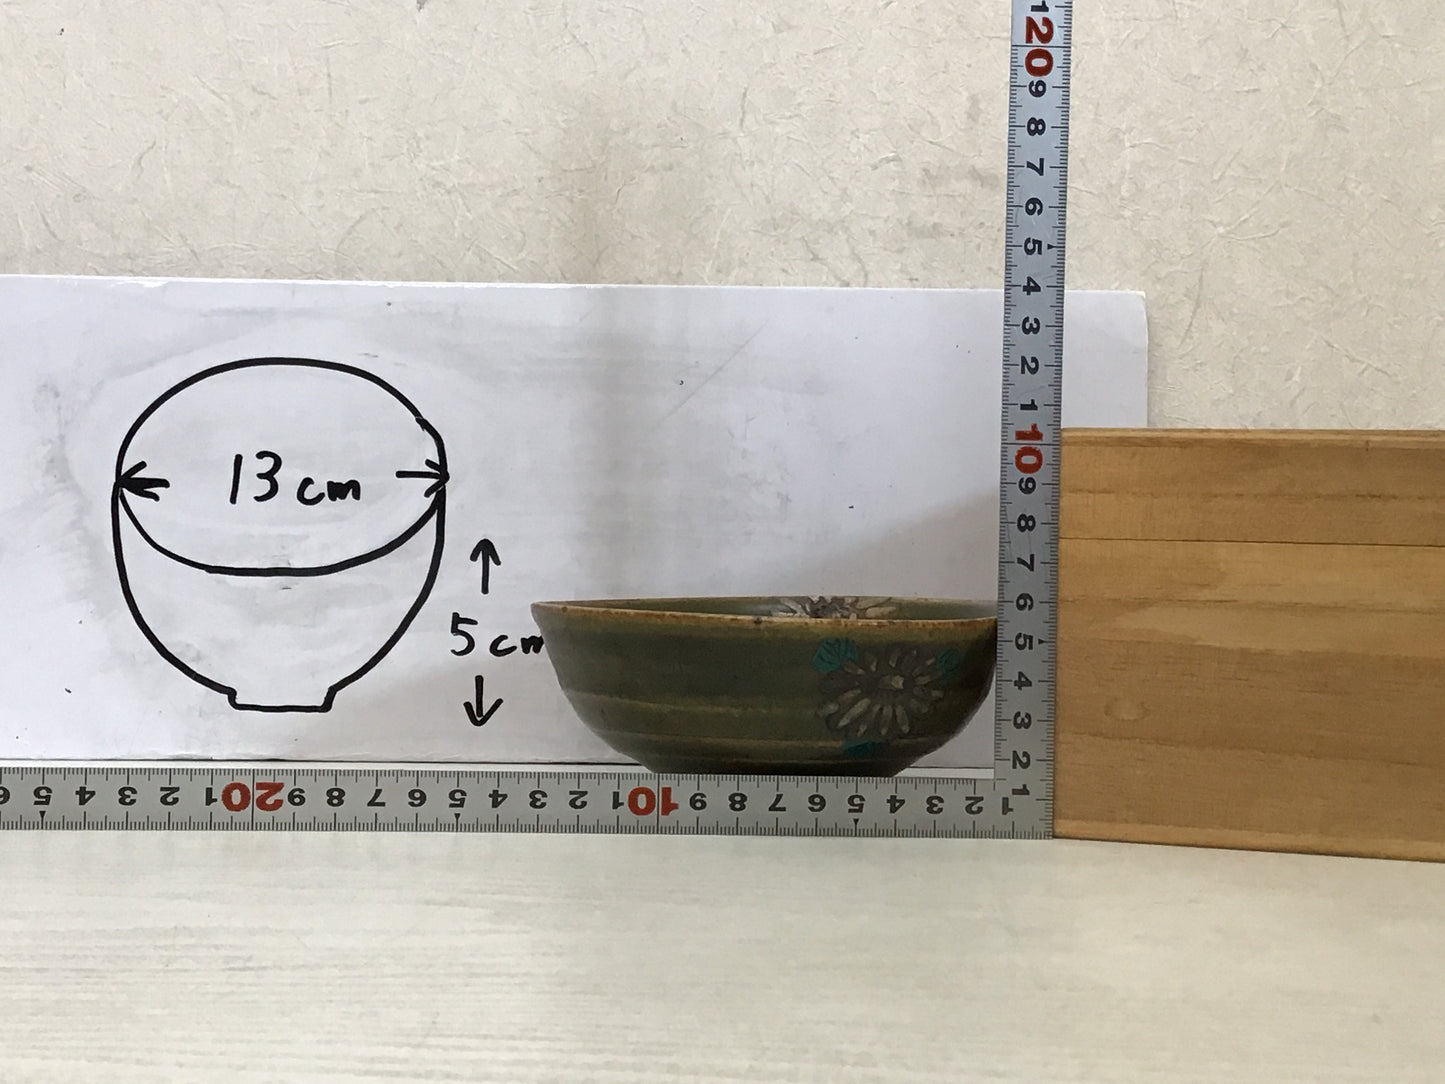 Y1809 CHAWAN Tsurumai-ware signed box Japanese bowl pottery Japan tea ceremony